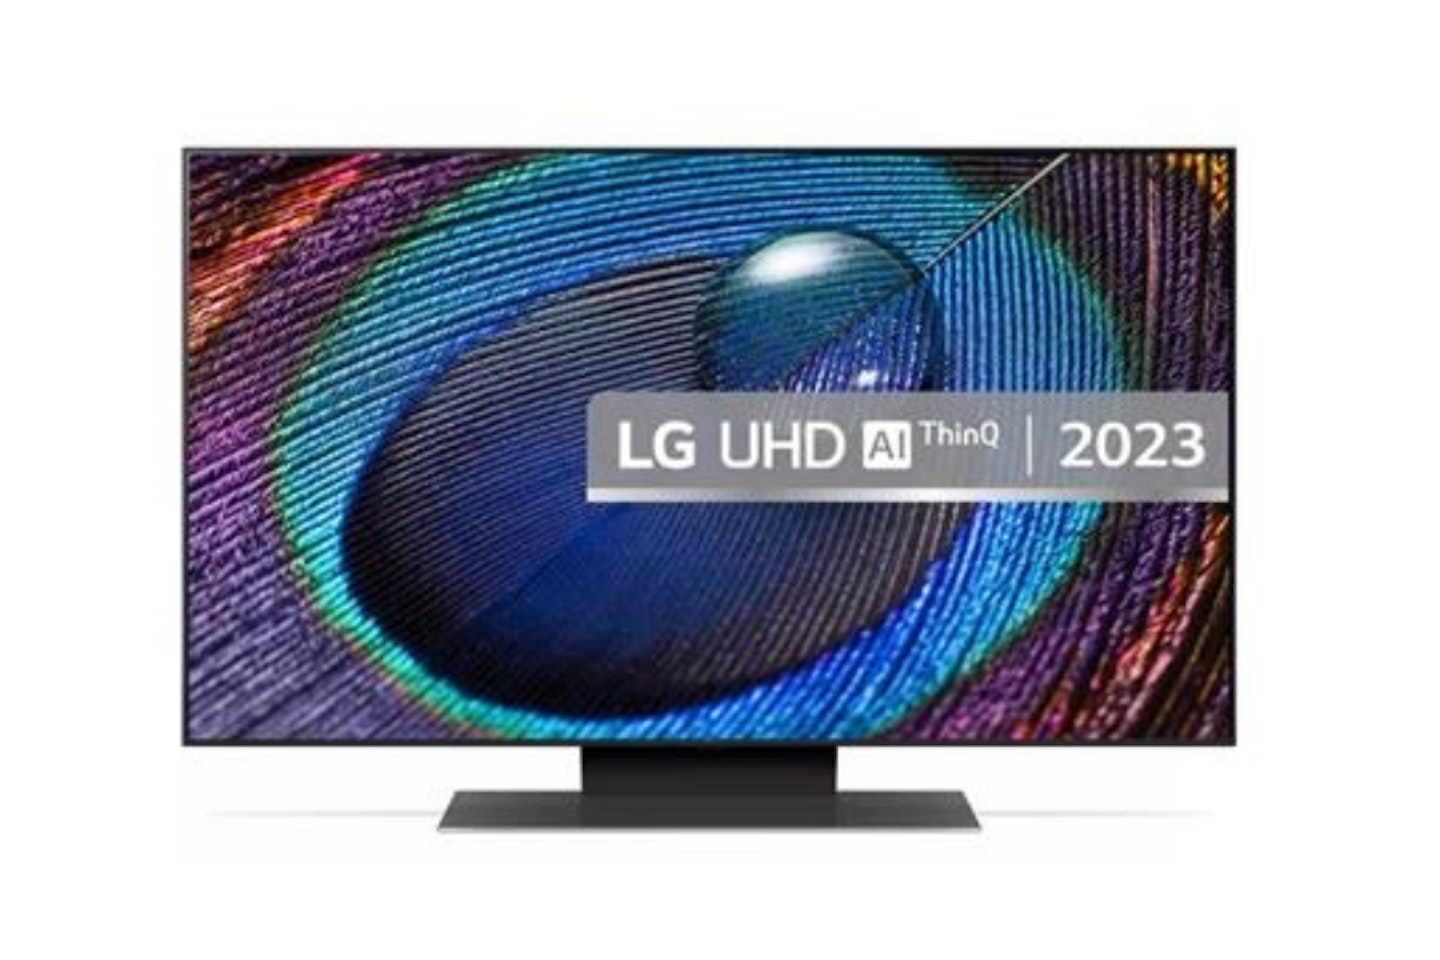 LG LED UR91 50" 4K Ultra HD HDR Smart TV 